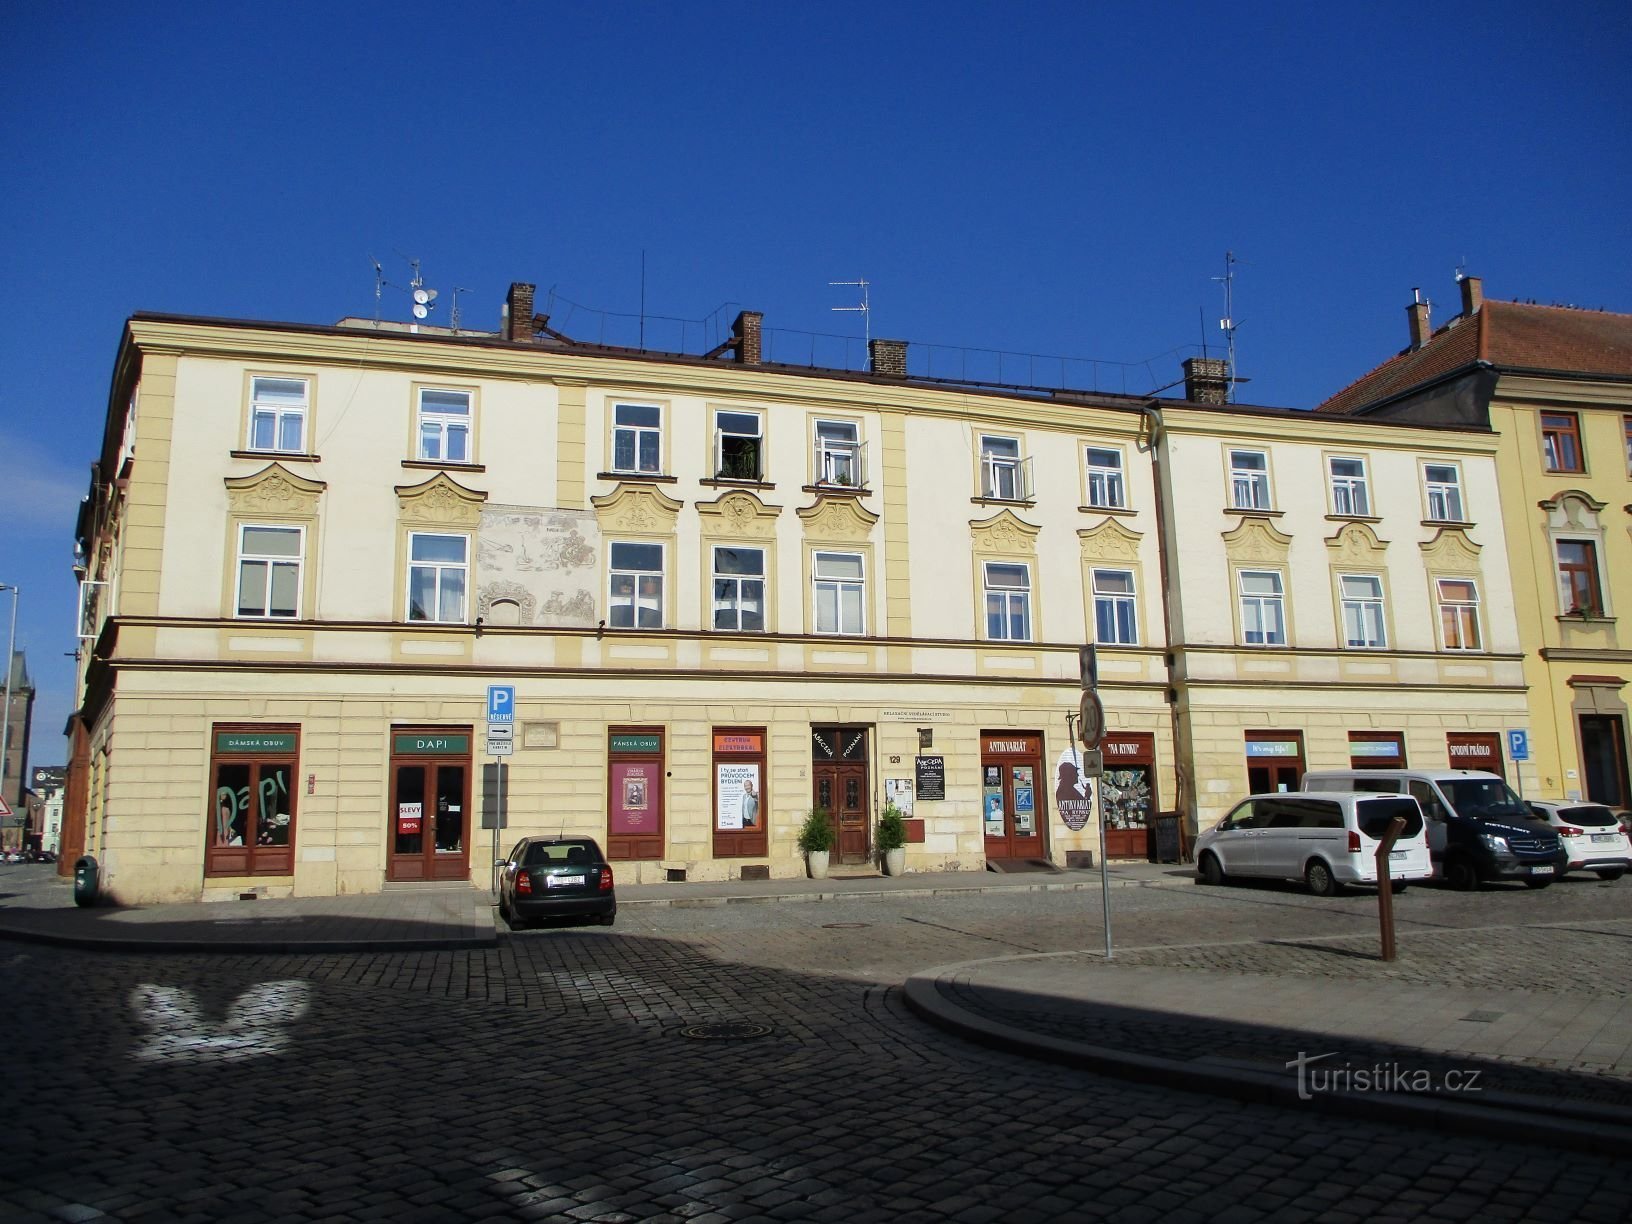 Malé náměstí n.129 (Hradec Králové, 6.7.2019 aprile XNUMX)